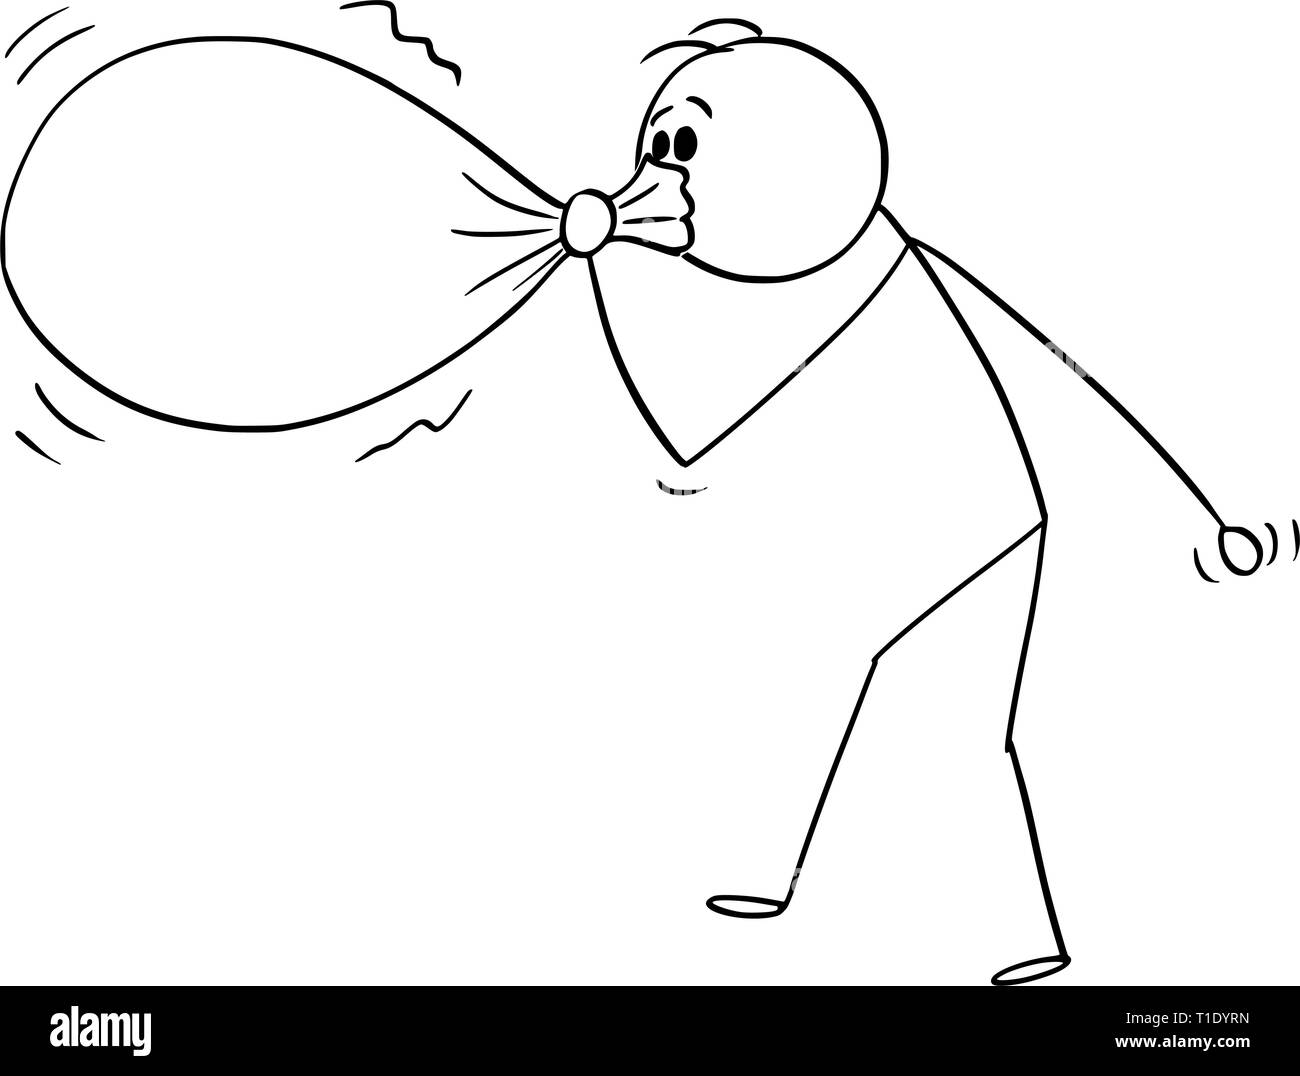 Cartoon stick figura disegno illustrazione concettuale dell'uomo o imprenditore di soffiaggio o di gonfiaggio di palloncino di grandi dimensioni o busta o sacca. Illustrazione Vettoriale